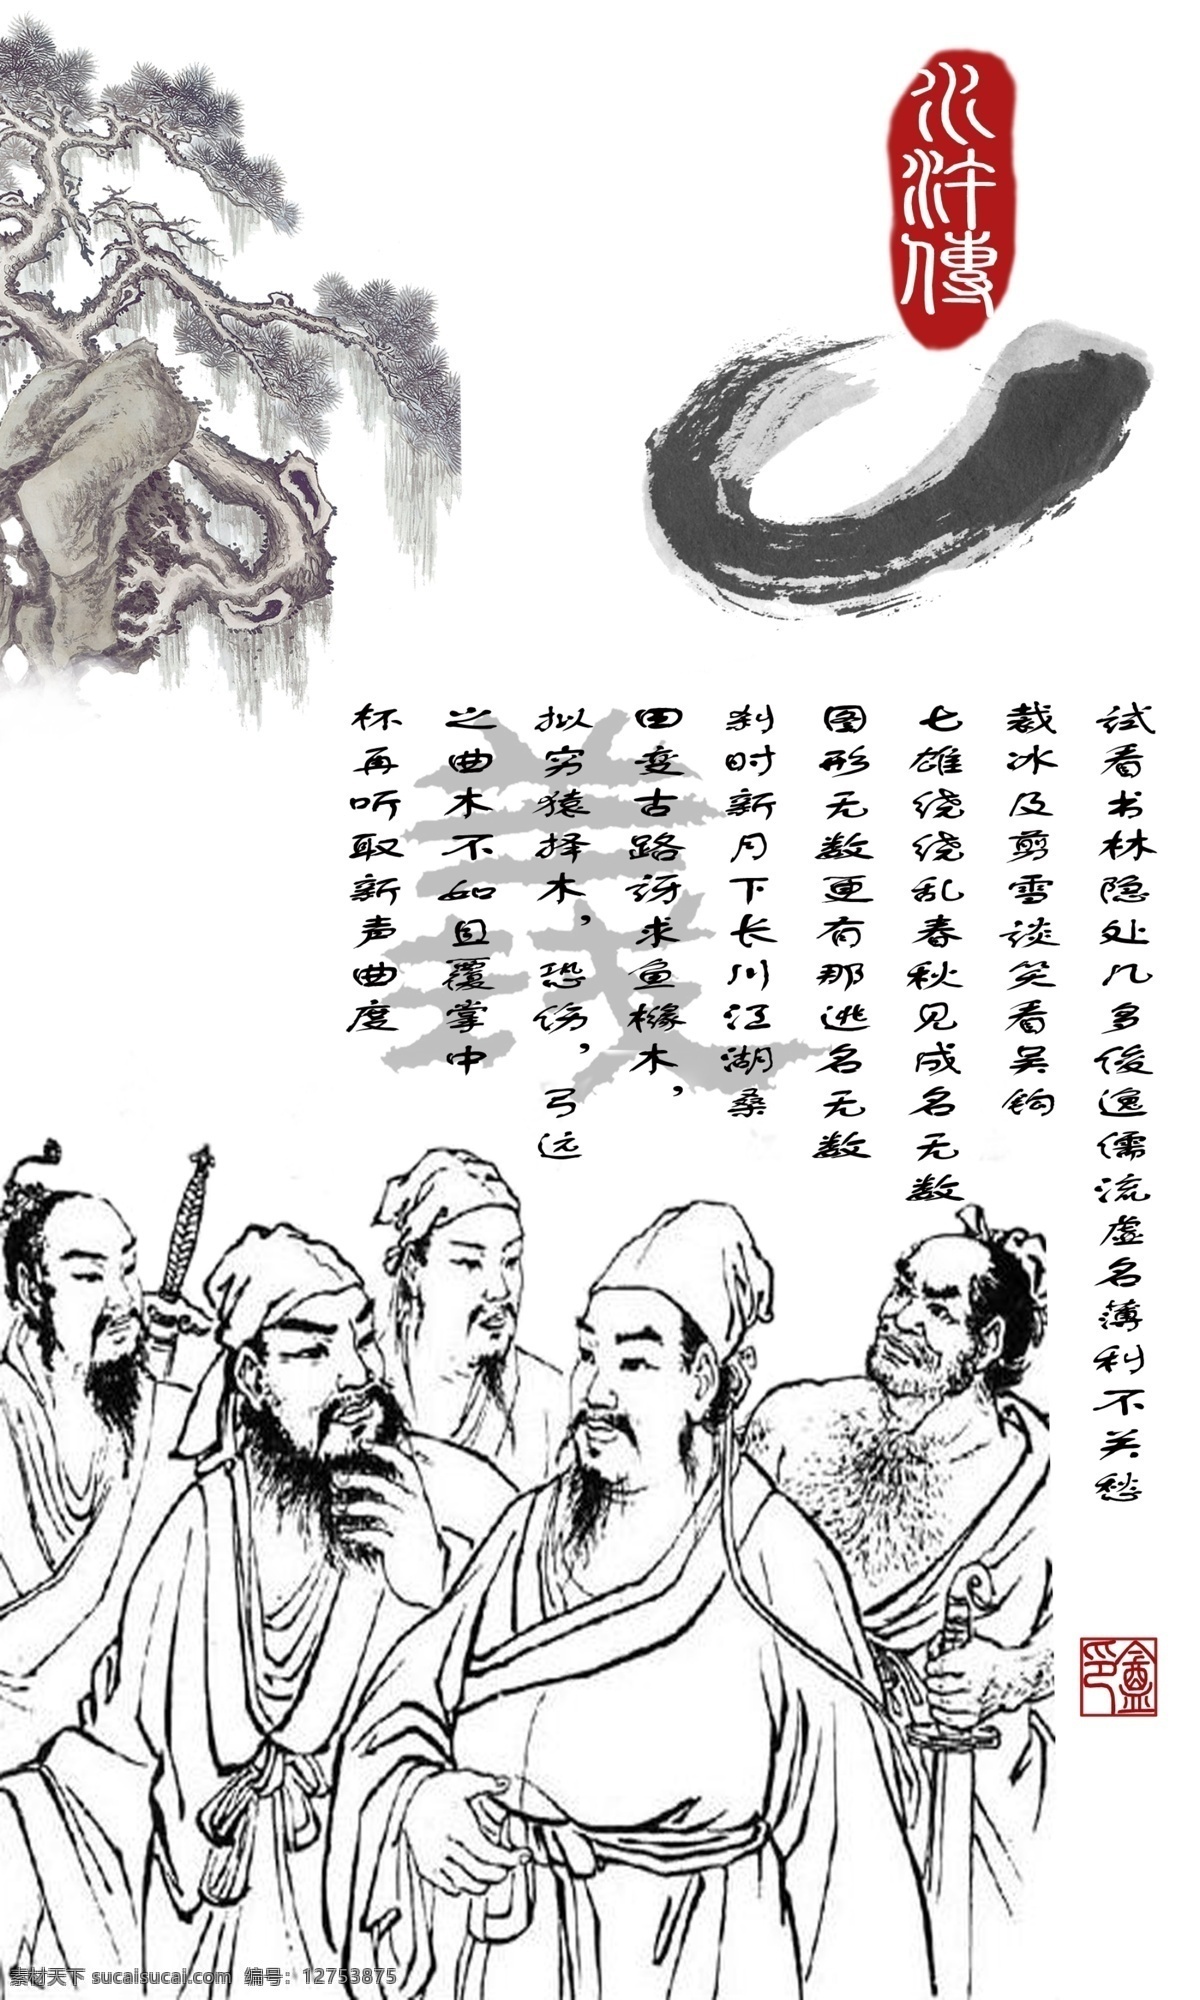 中国 传统文化 宣传 展板 高清 分层 图 水浒传 其他展板设计